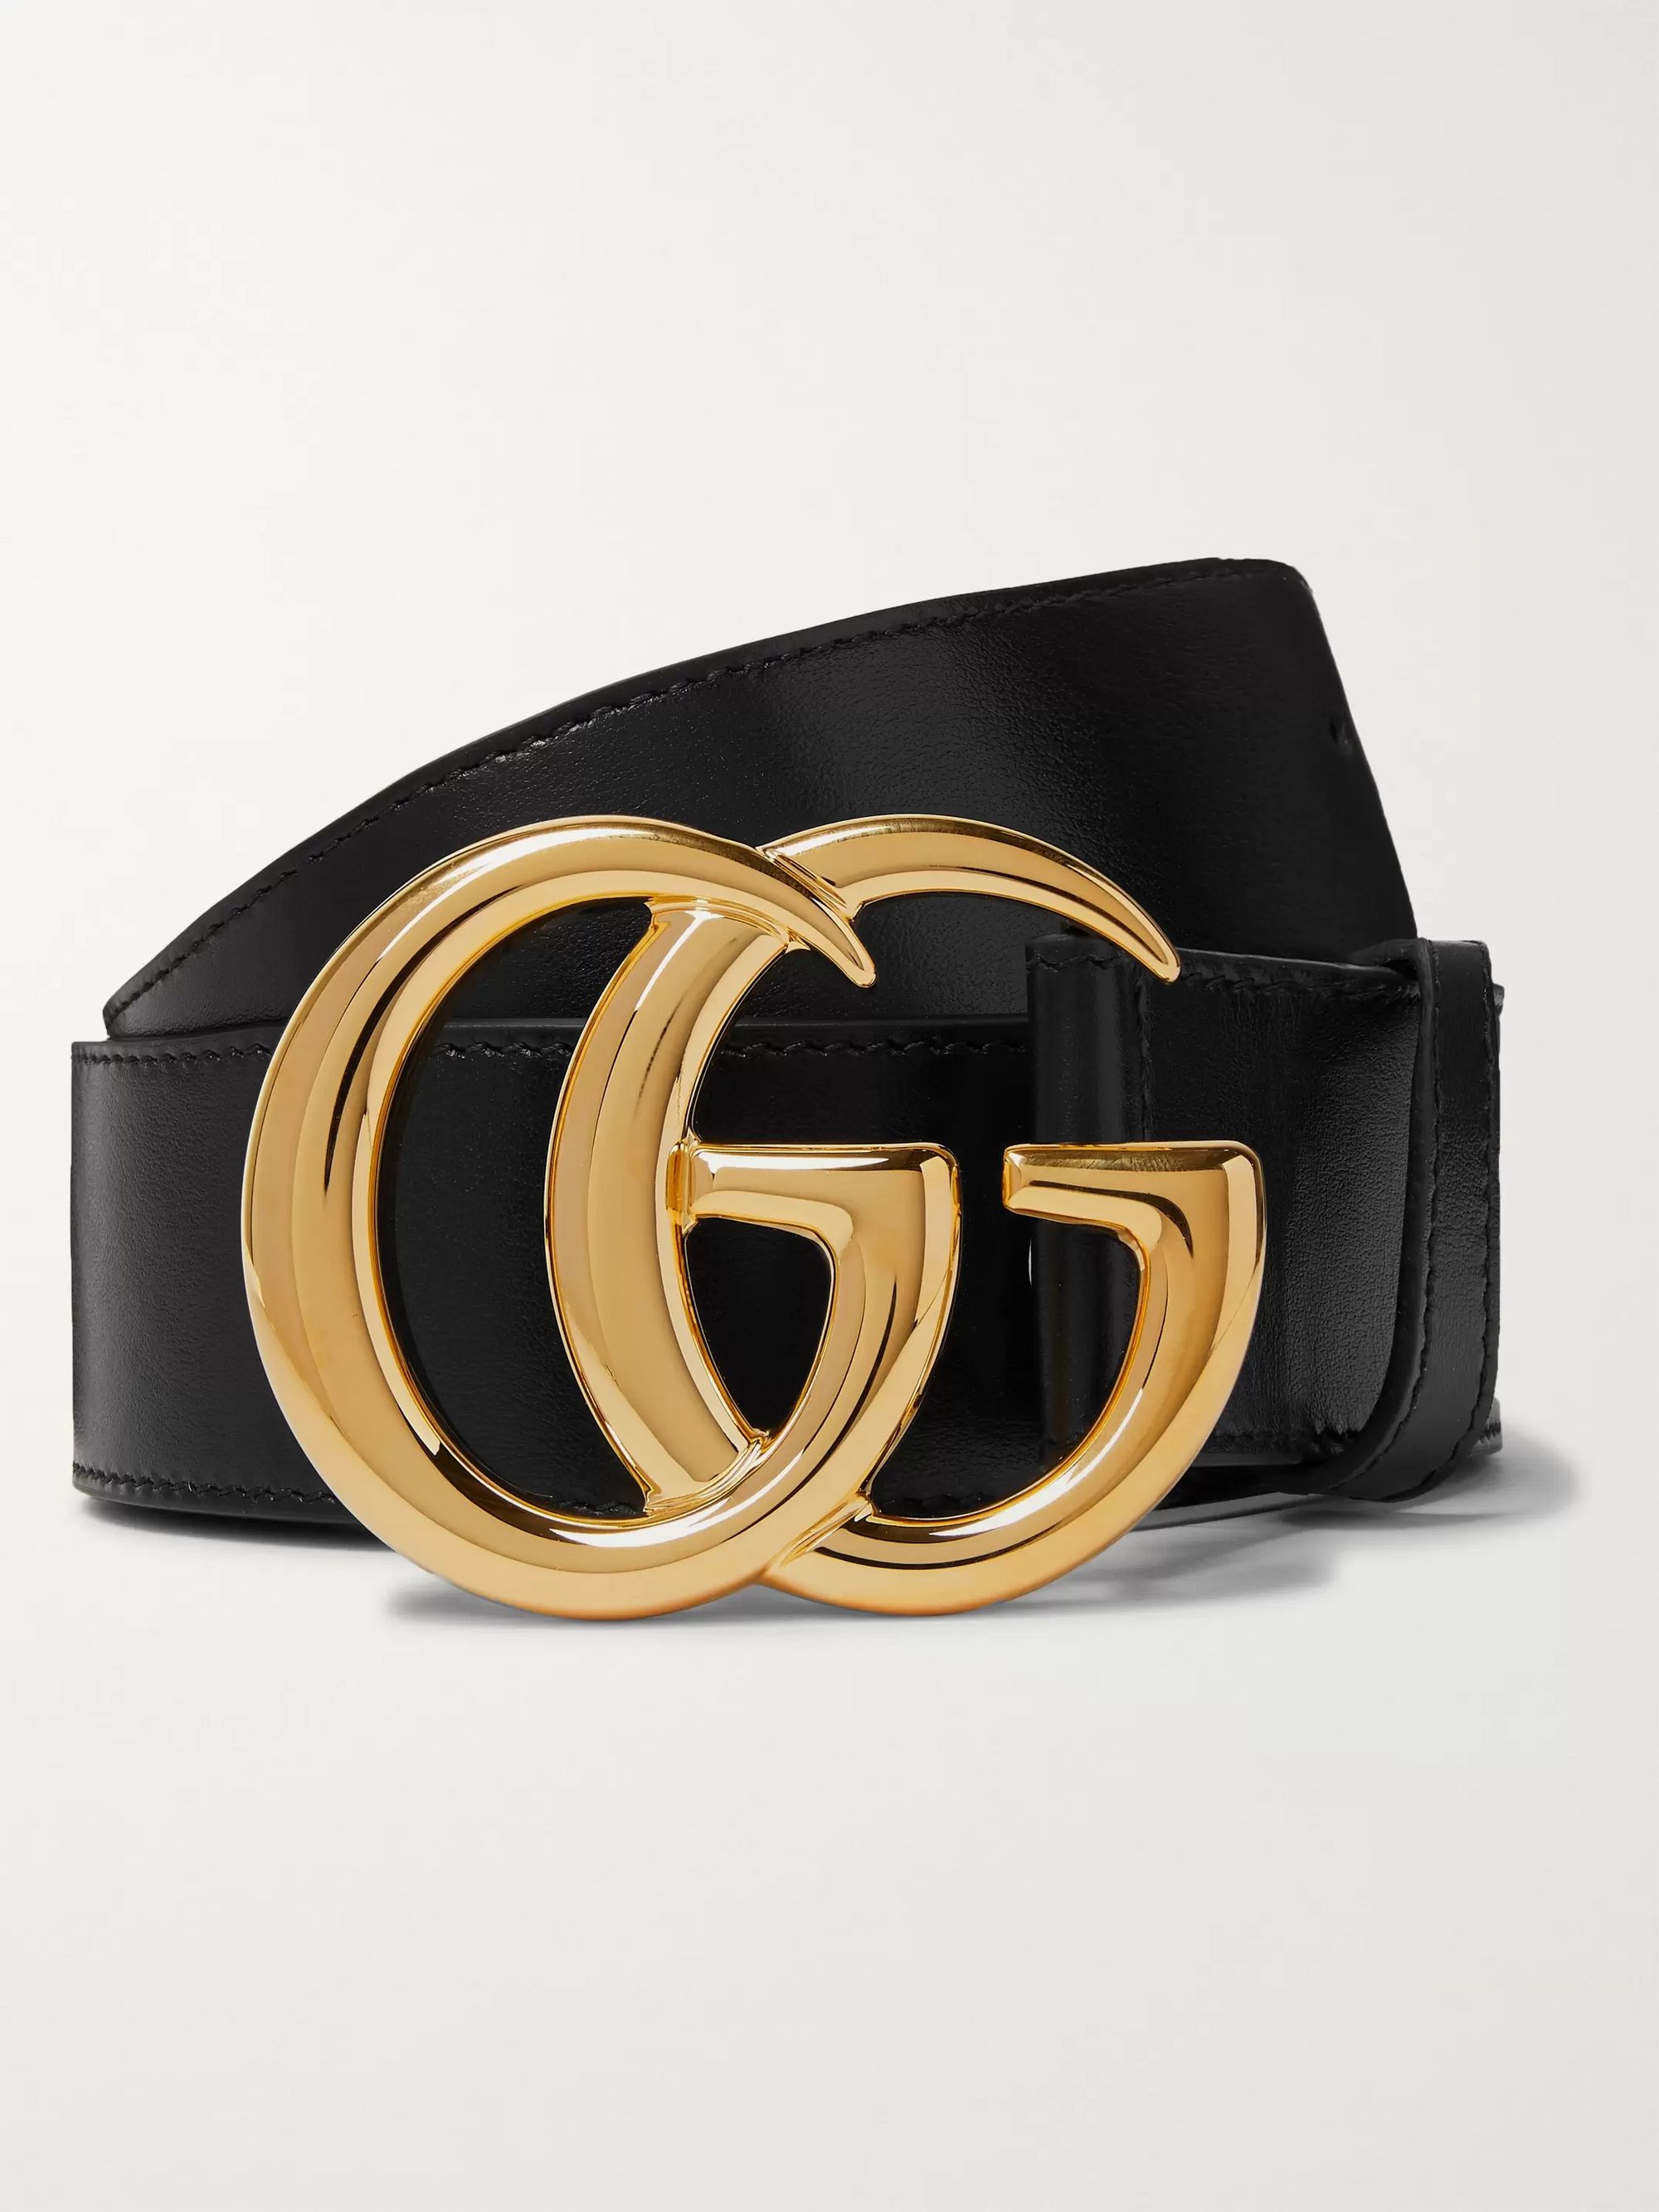 gg gold belt